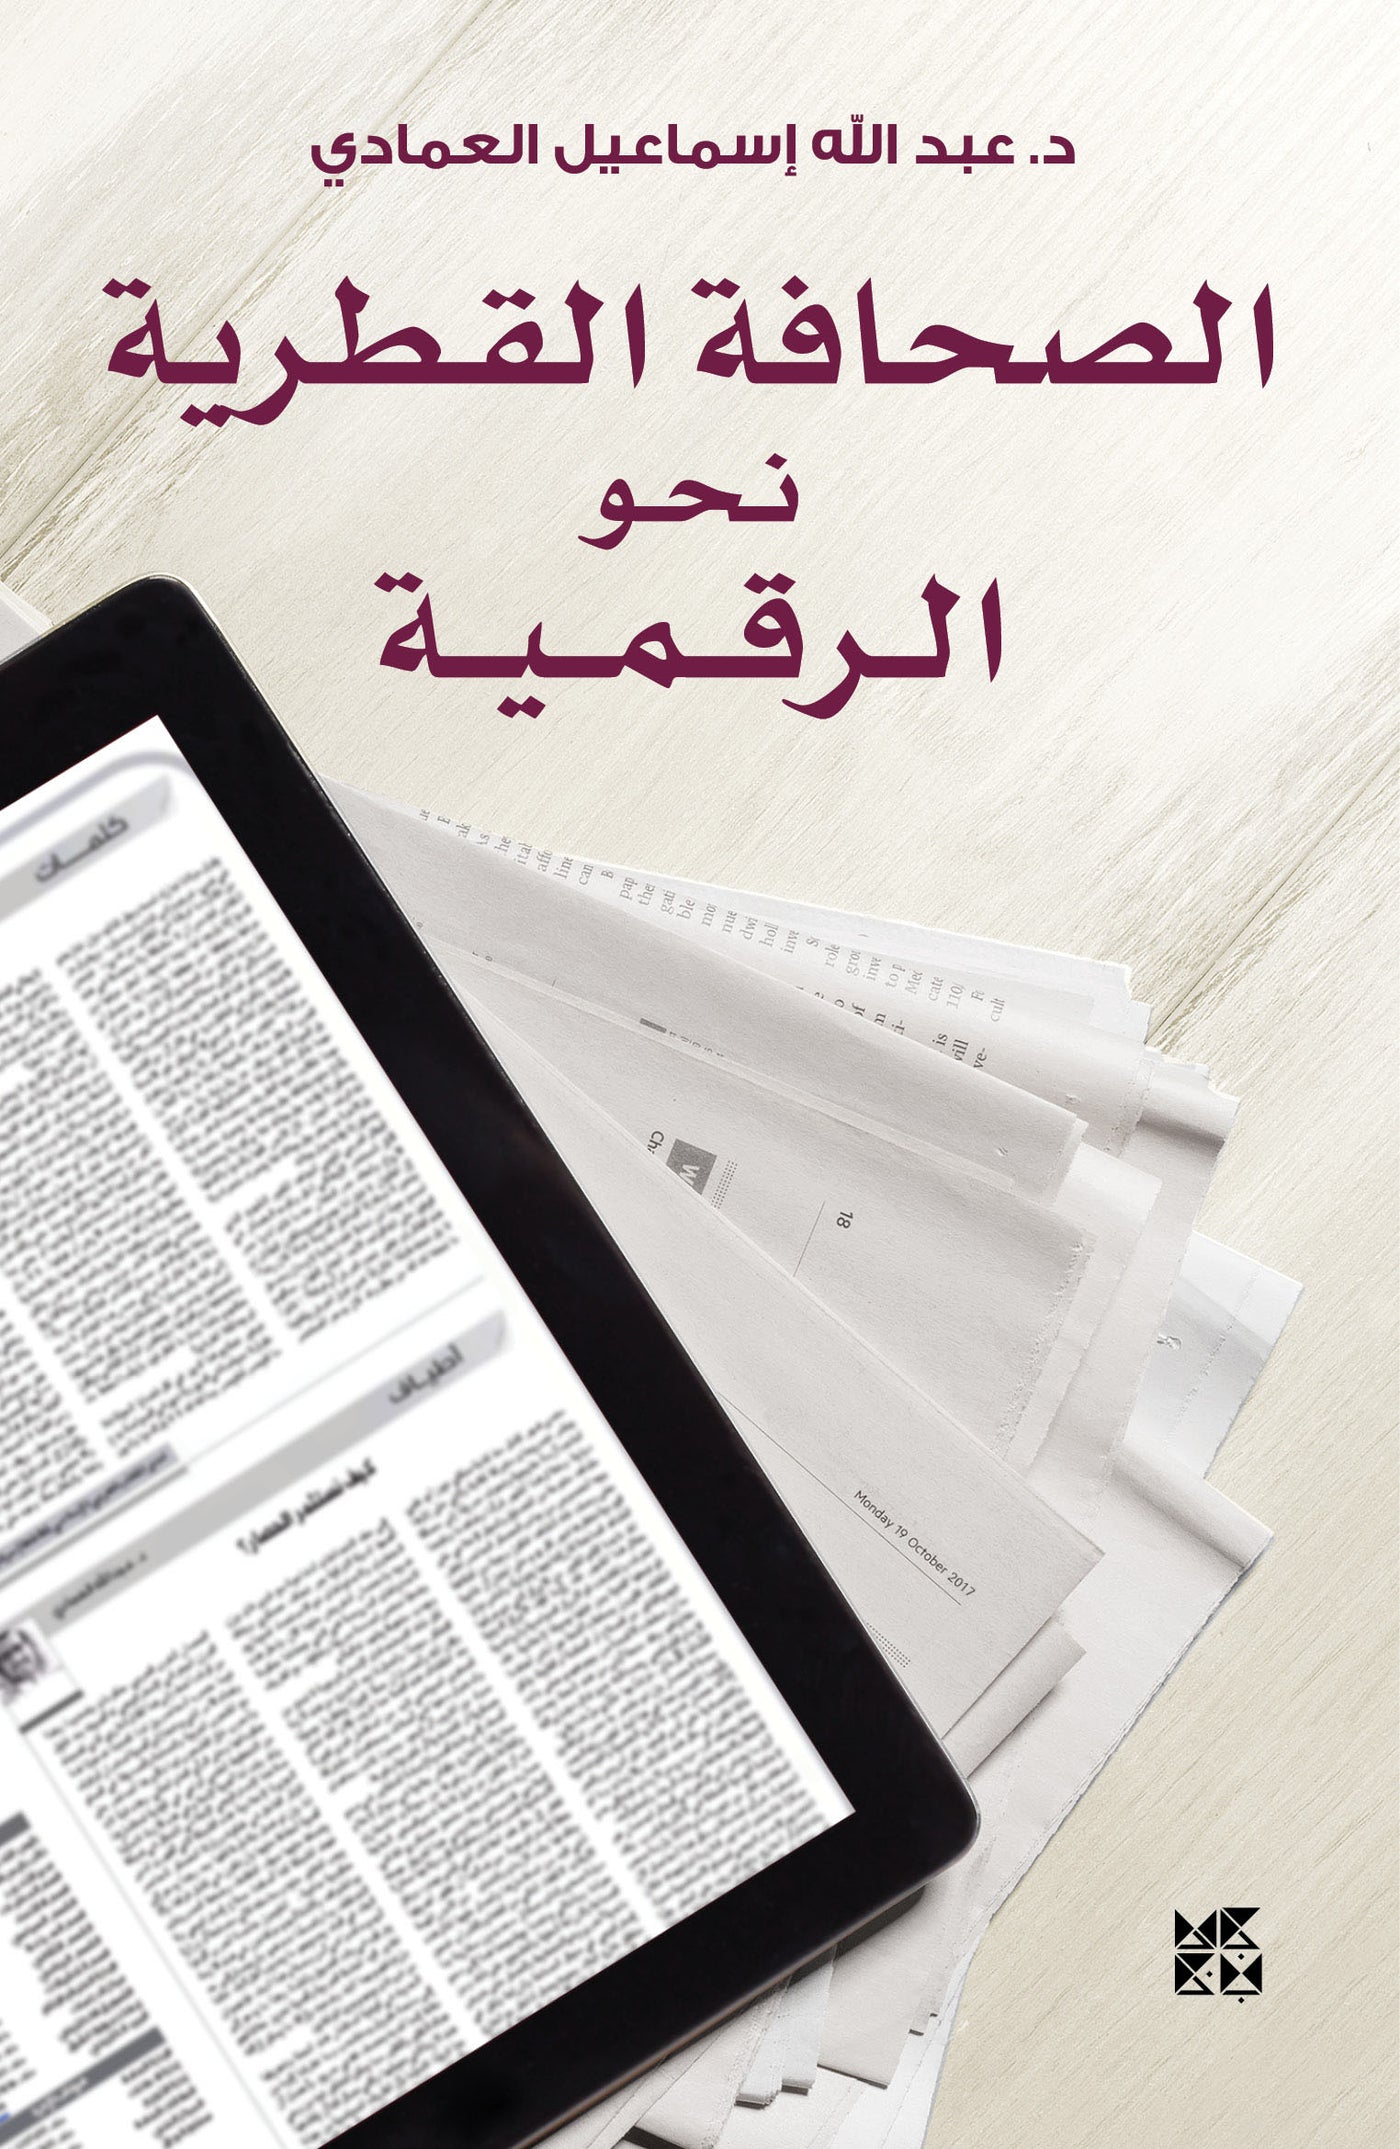 The Qatari Press in the Digital Age - Book Cover